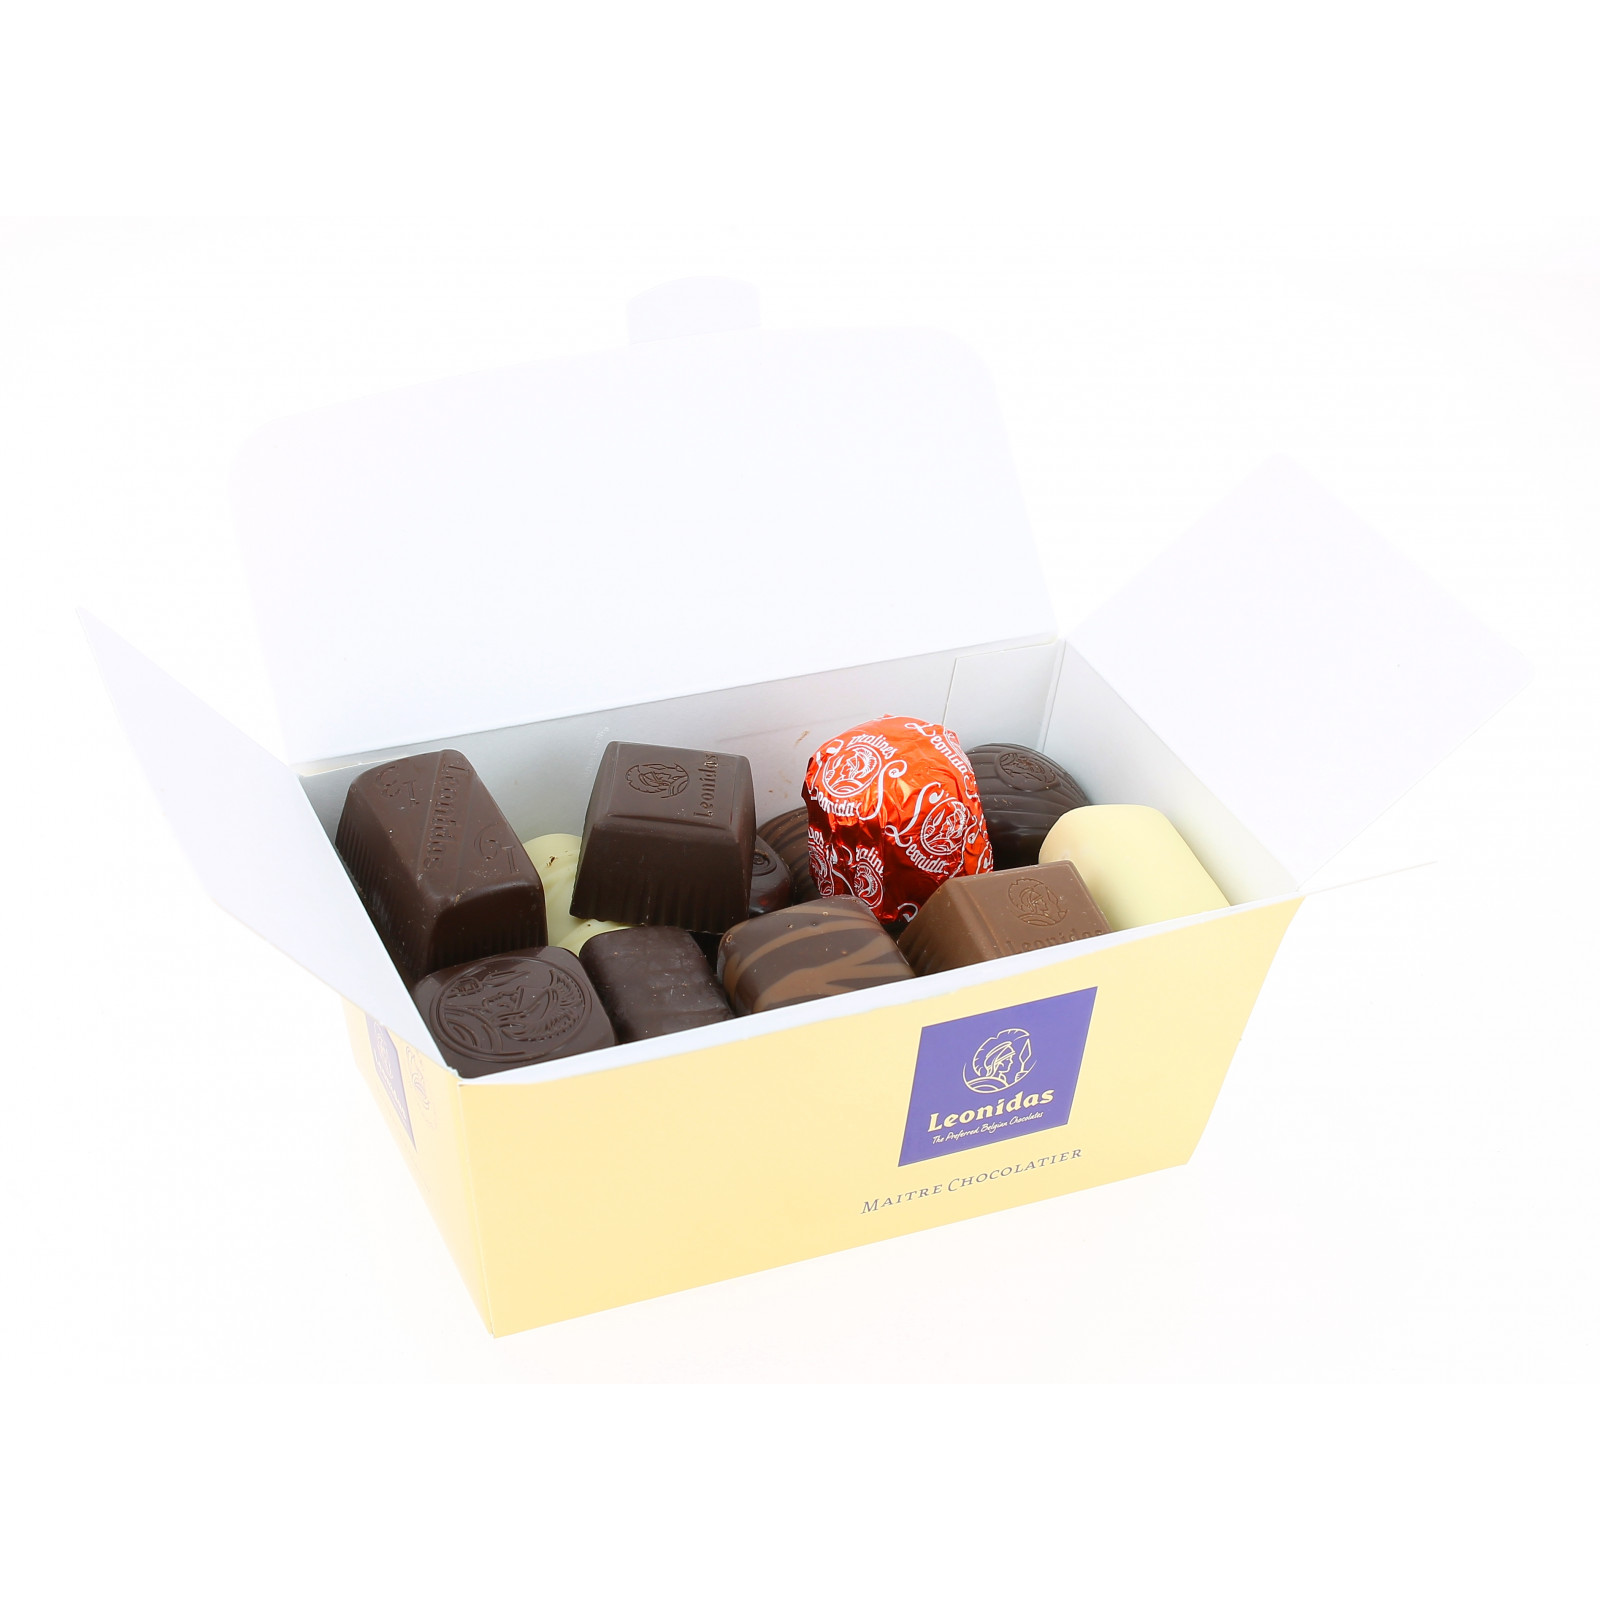 Mini ballotin chocolats pralines Léonidas-boutique en ligne